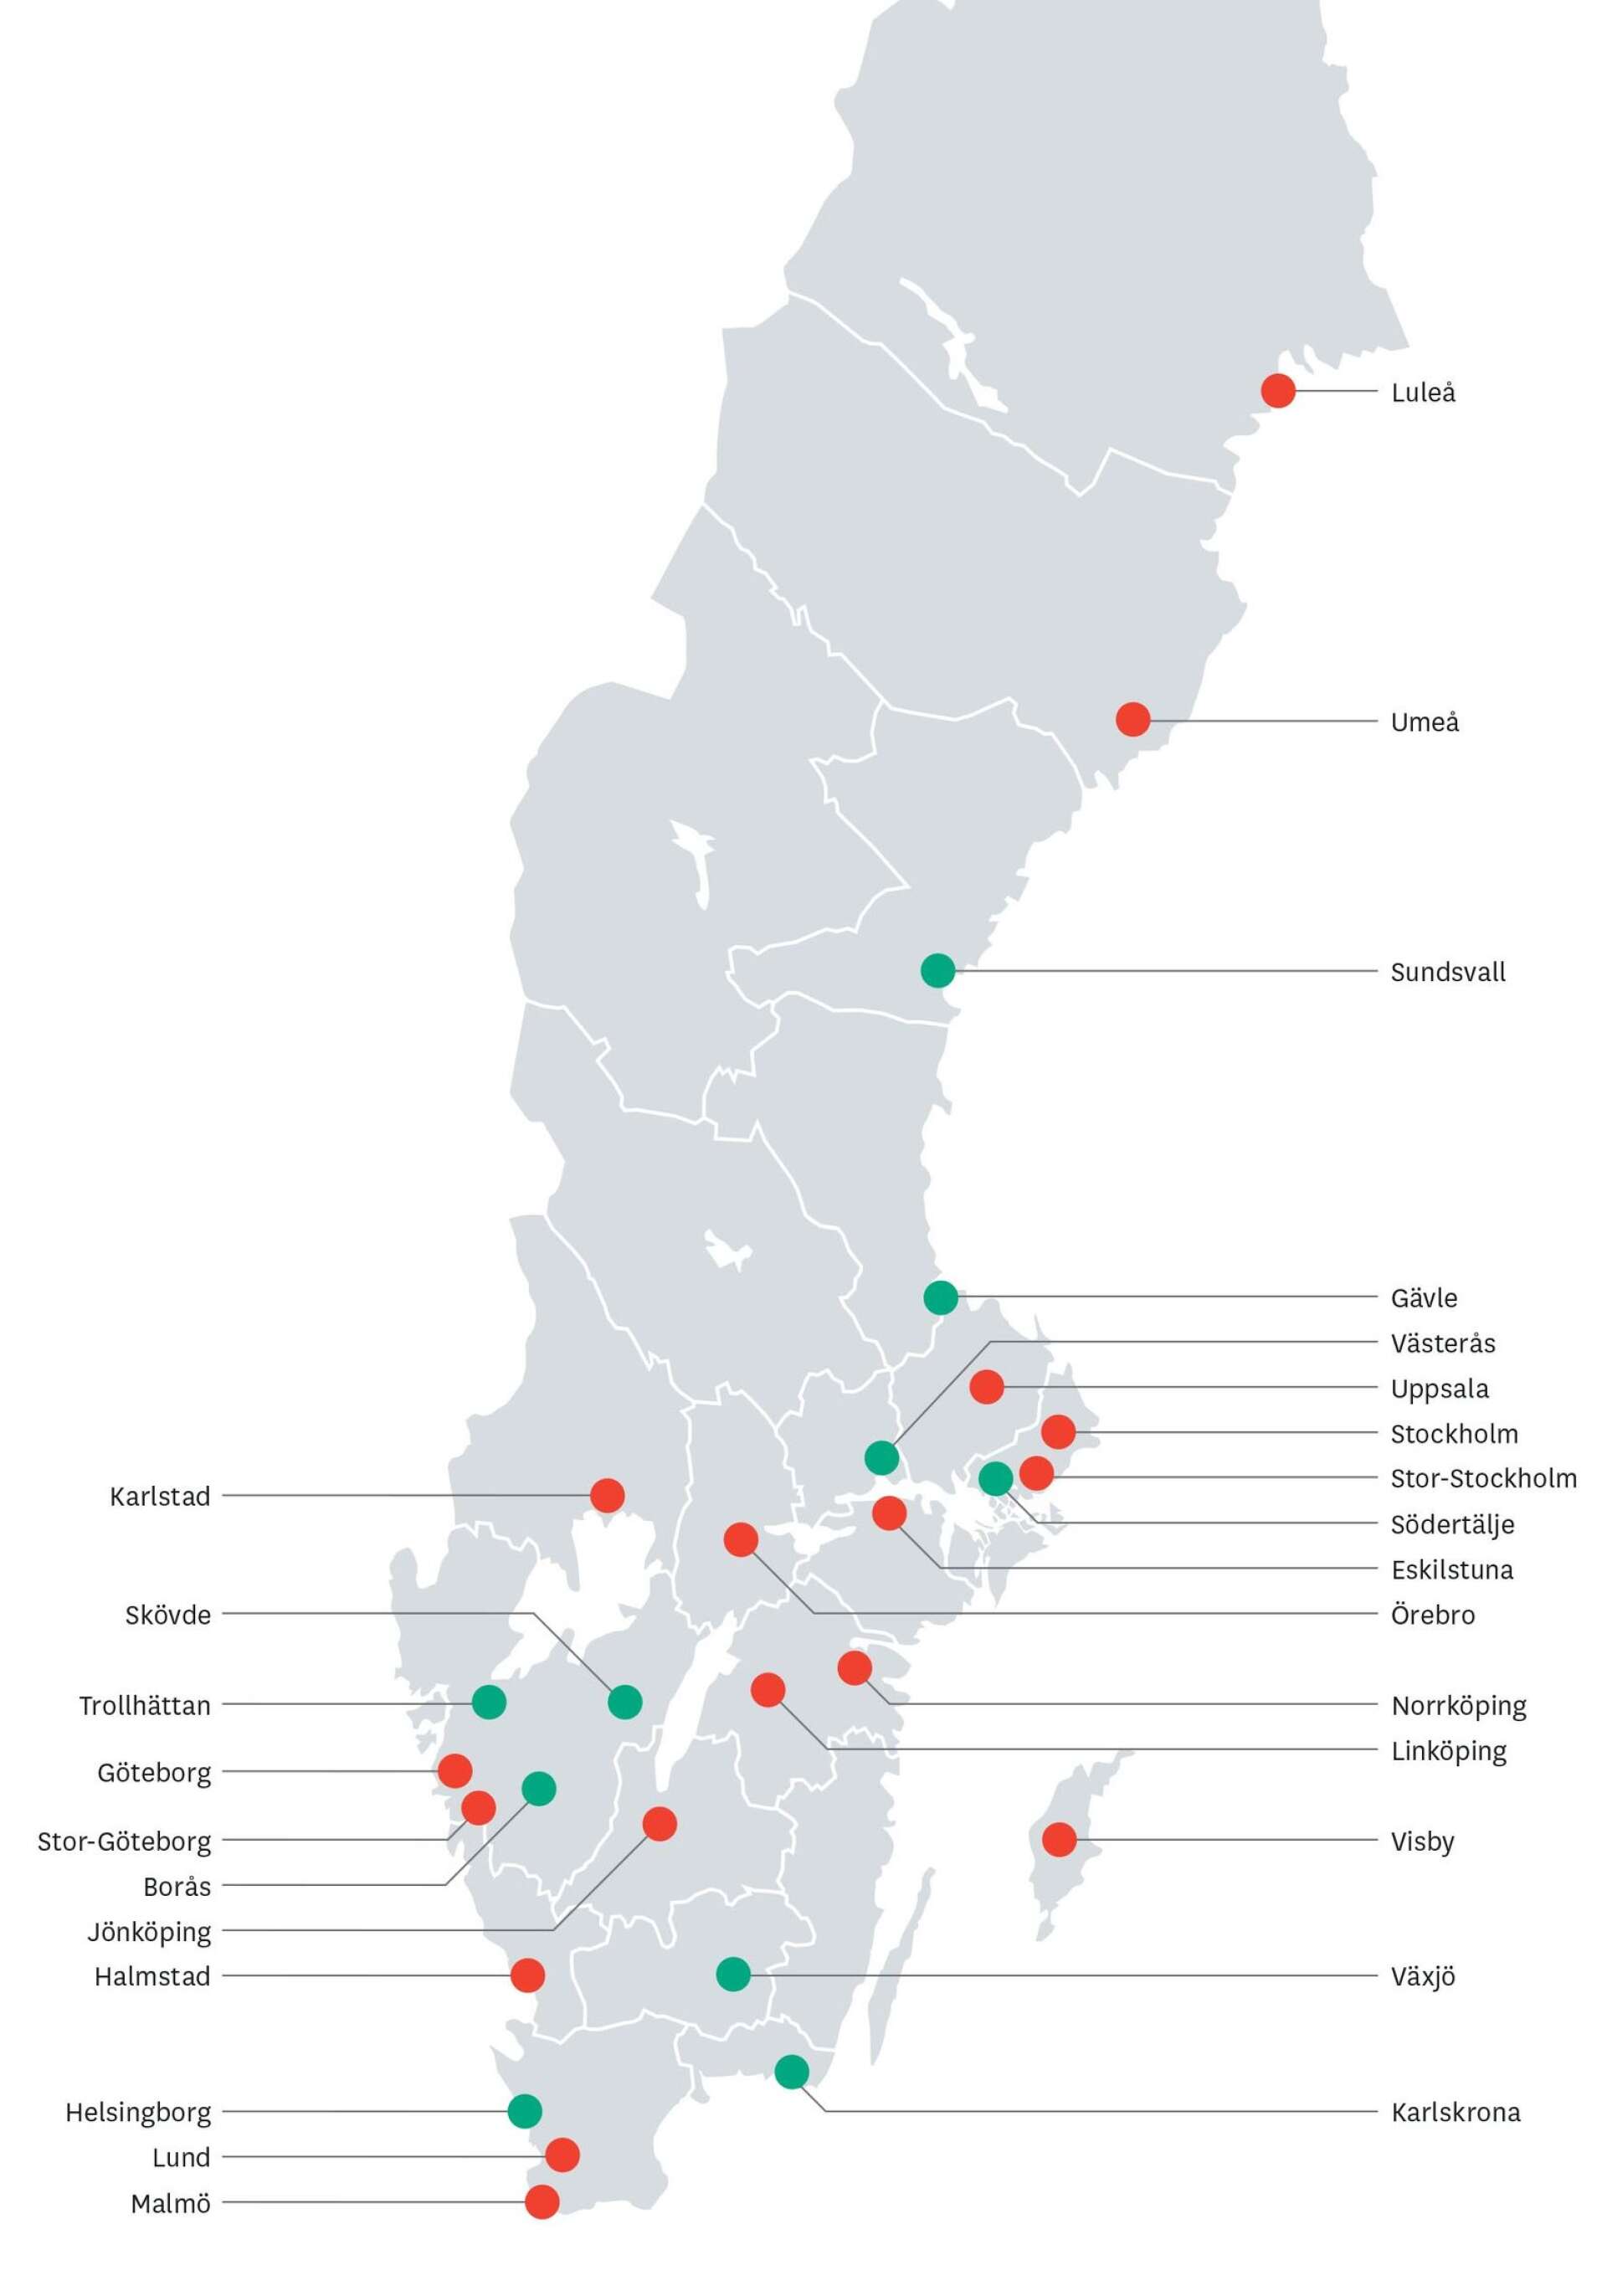 Karlstad är, tillsammans med Luleå, Eskilstuna och Norrköping, de städer som från rapporten 2019 skiftat från grönt till rött. Växjö och Södertälje har i sin tur gått från rött till grönt.